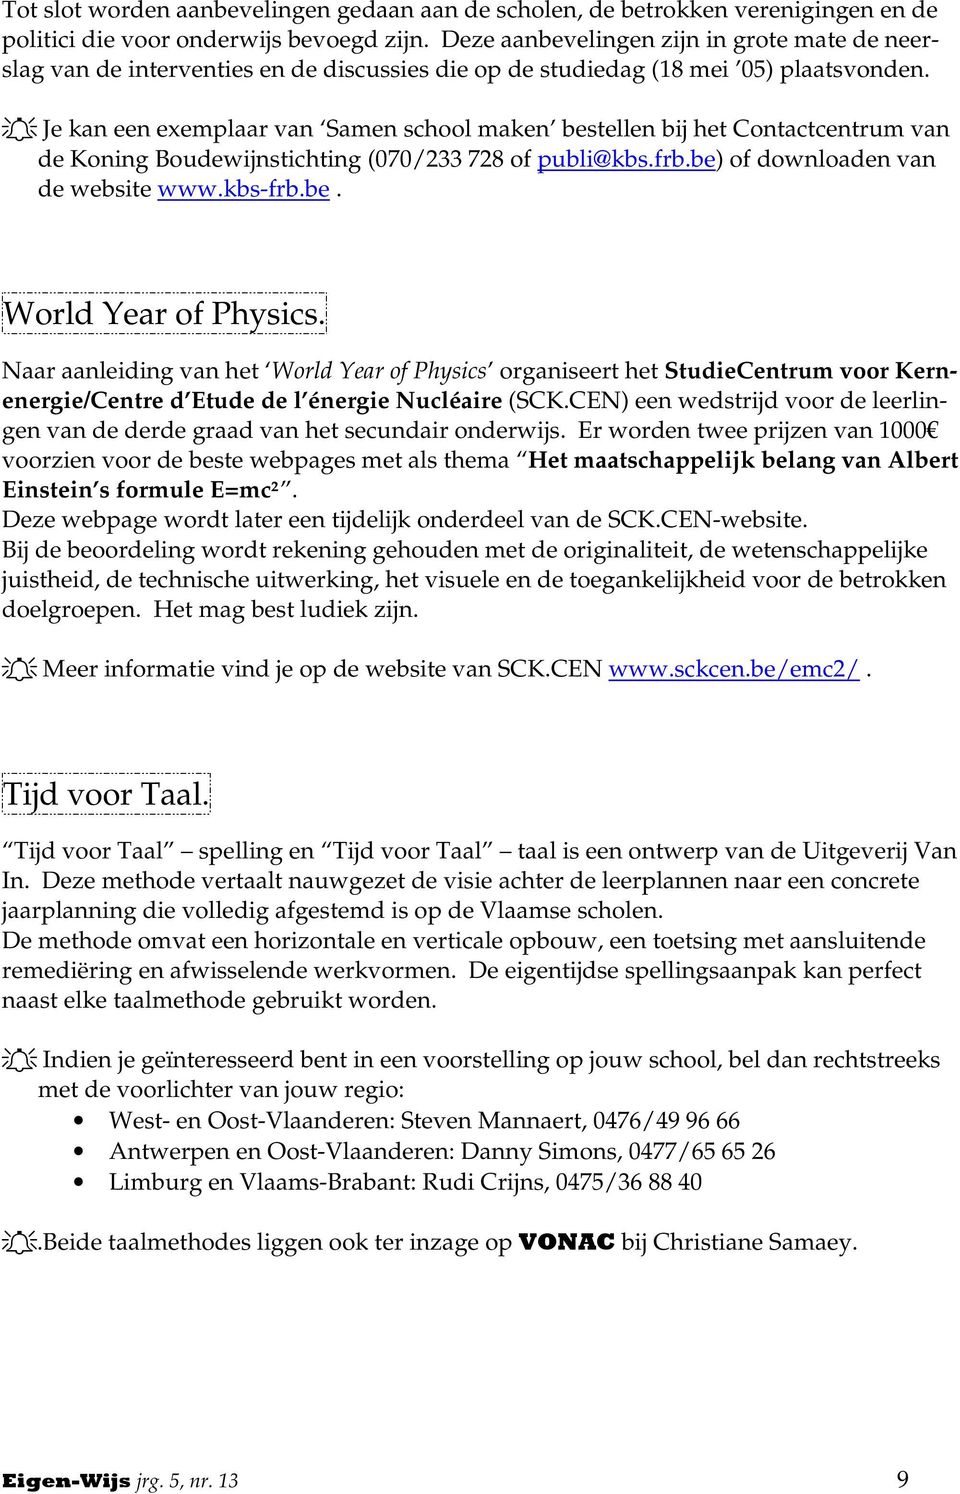 Je kan een exemplaar van Samen school maken bestellen bij het Contactcentrum van de Koning Boudewijnstichting (070/233 728 of publi@kbs.frb.be) of downloaden van de website www.kbs-frb.be. World Year of Physics.